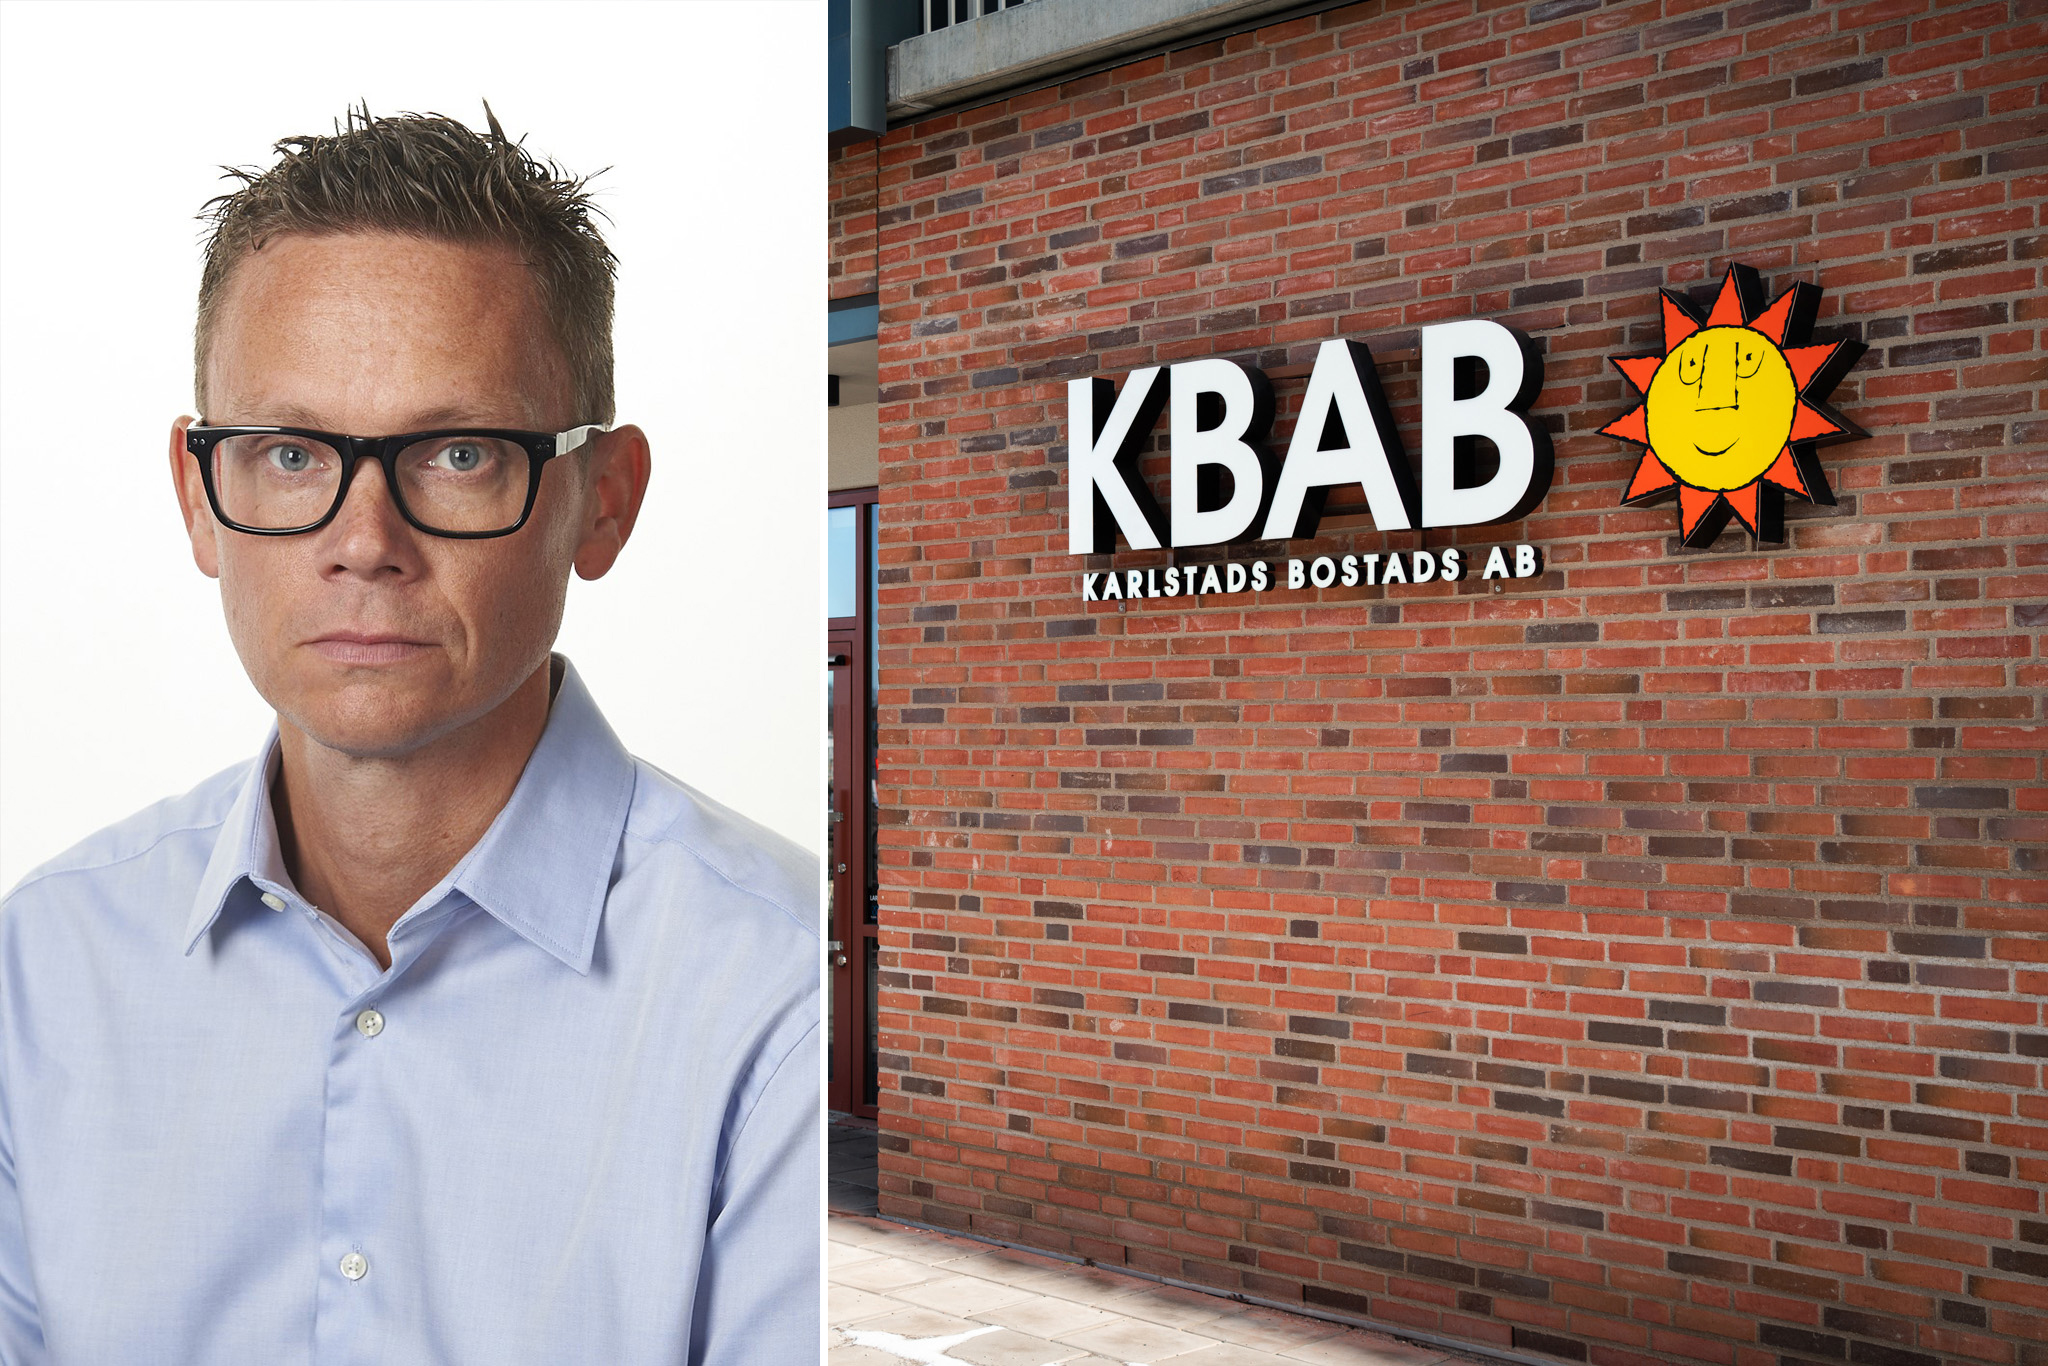 Niklas Karlsson i ljusblå skjorta och glasögon som förhandlar höjningen av hyror för värden KBAB. En på en husfasad med KBAB:s logga med en glad sol.